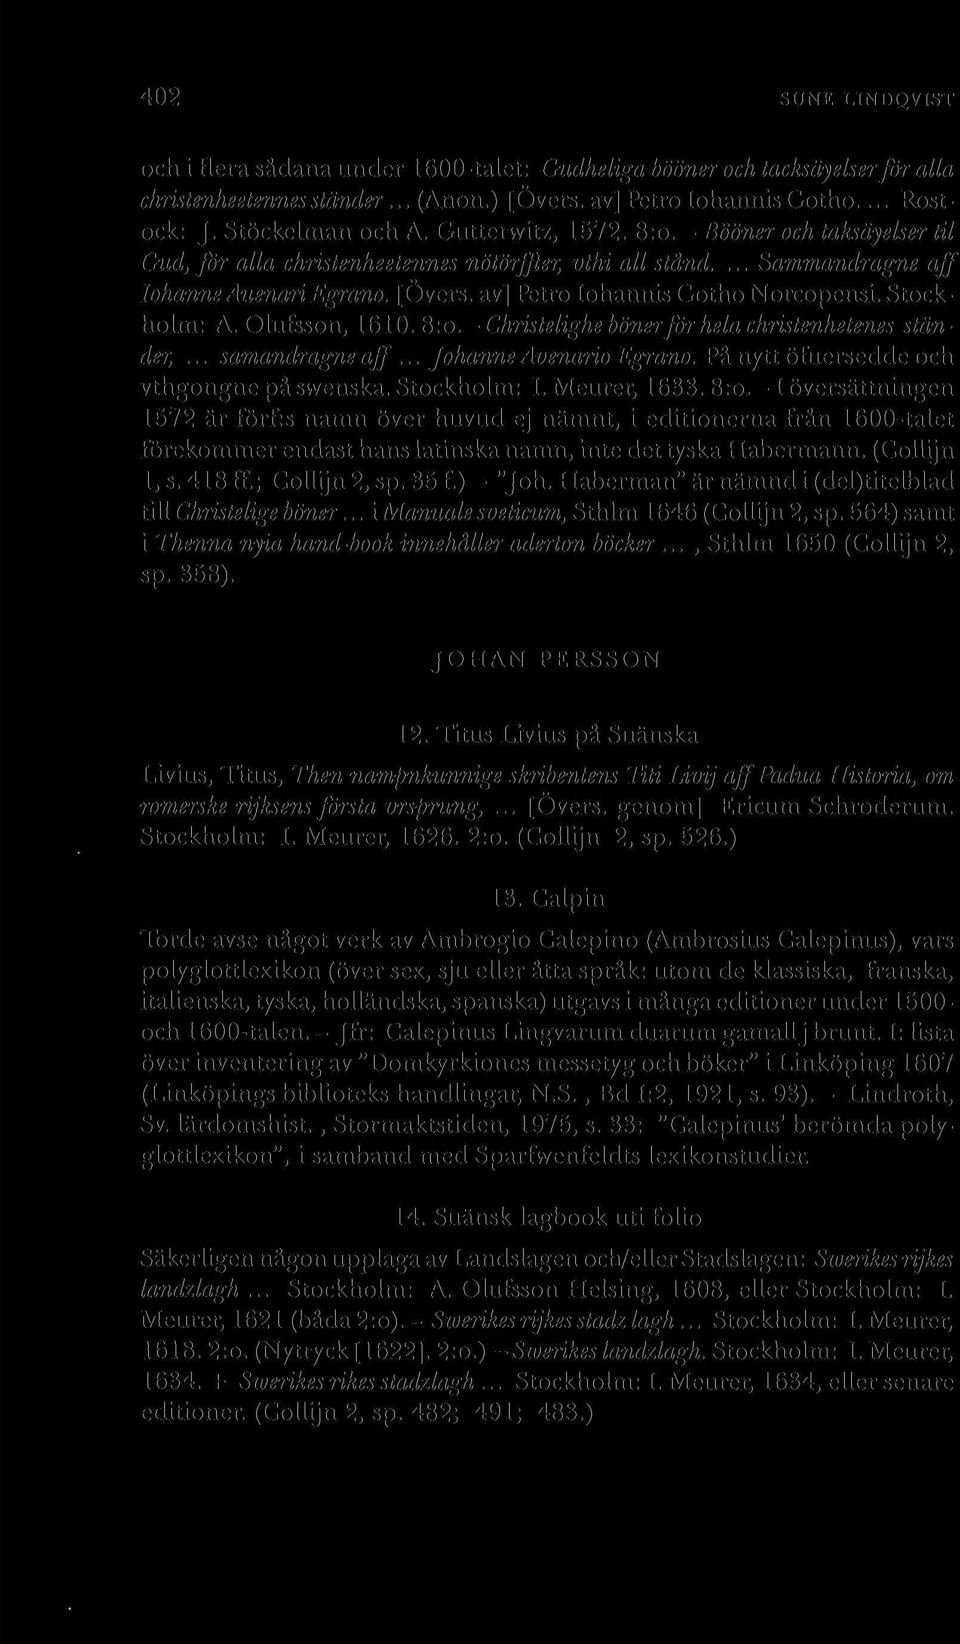 Stockholm: A. Olufsson, 1610. 8:o.-Christelighe bönerför hela christenhetenes ständer,... samandragne aff... Johanne Avenario Egrano. På nytt öfuersedde och vthgongne på swenska. Stockholm: I.